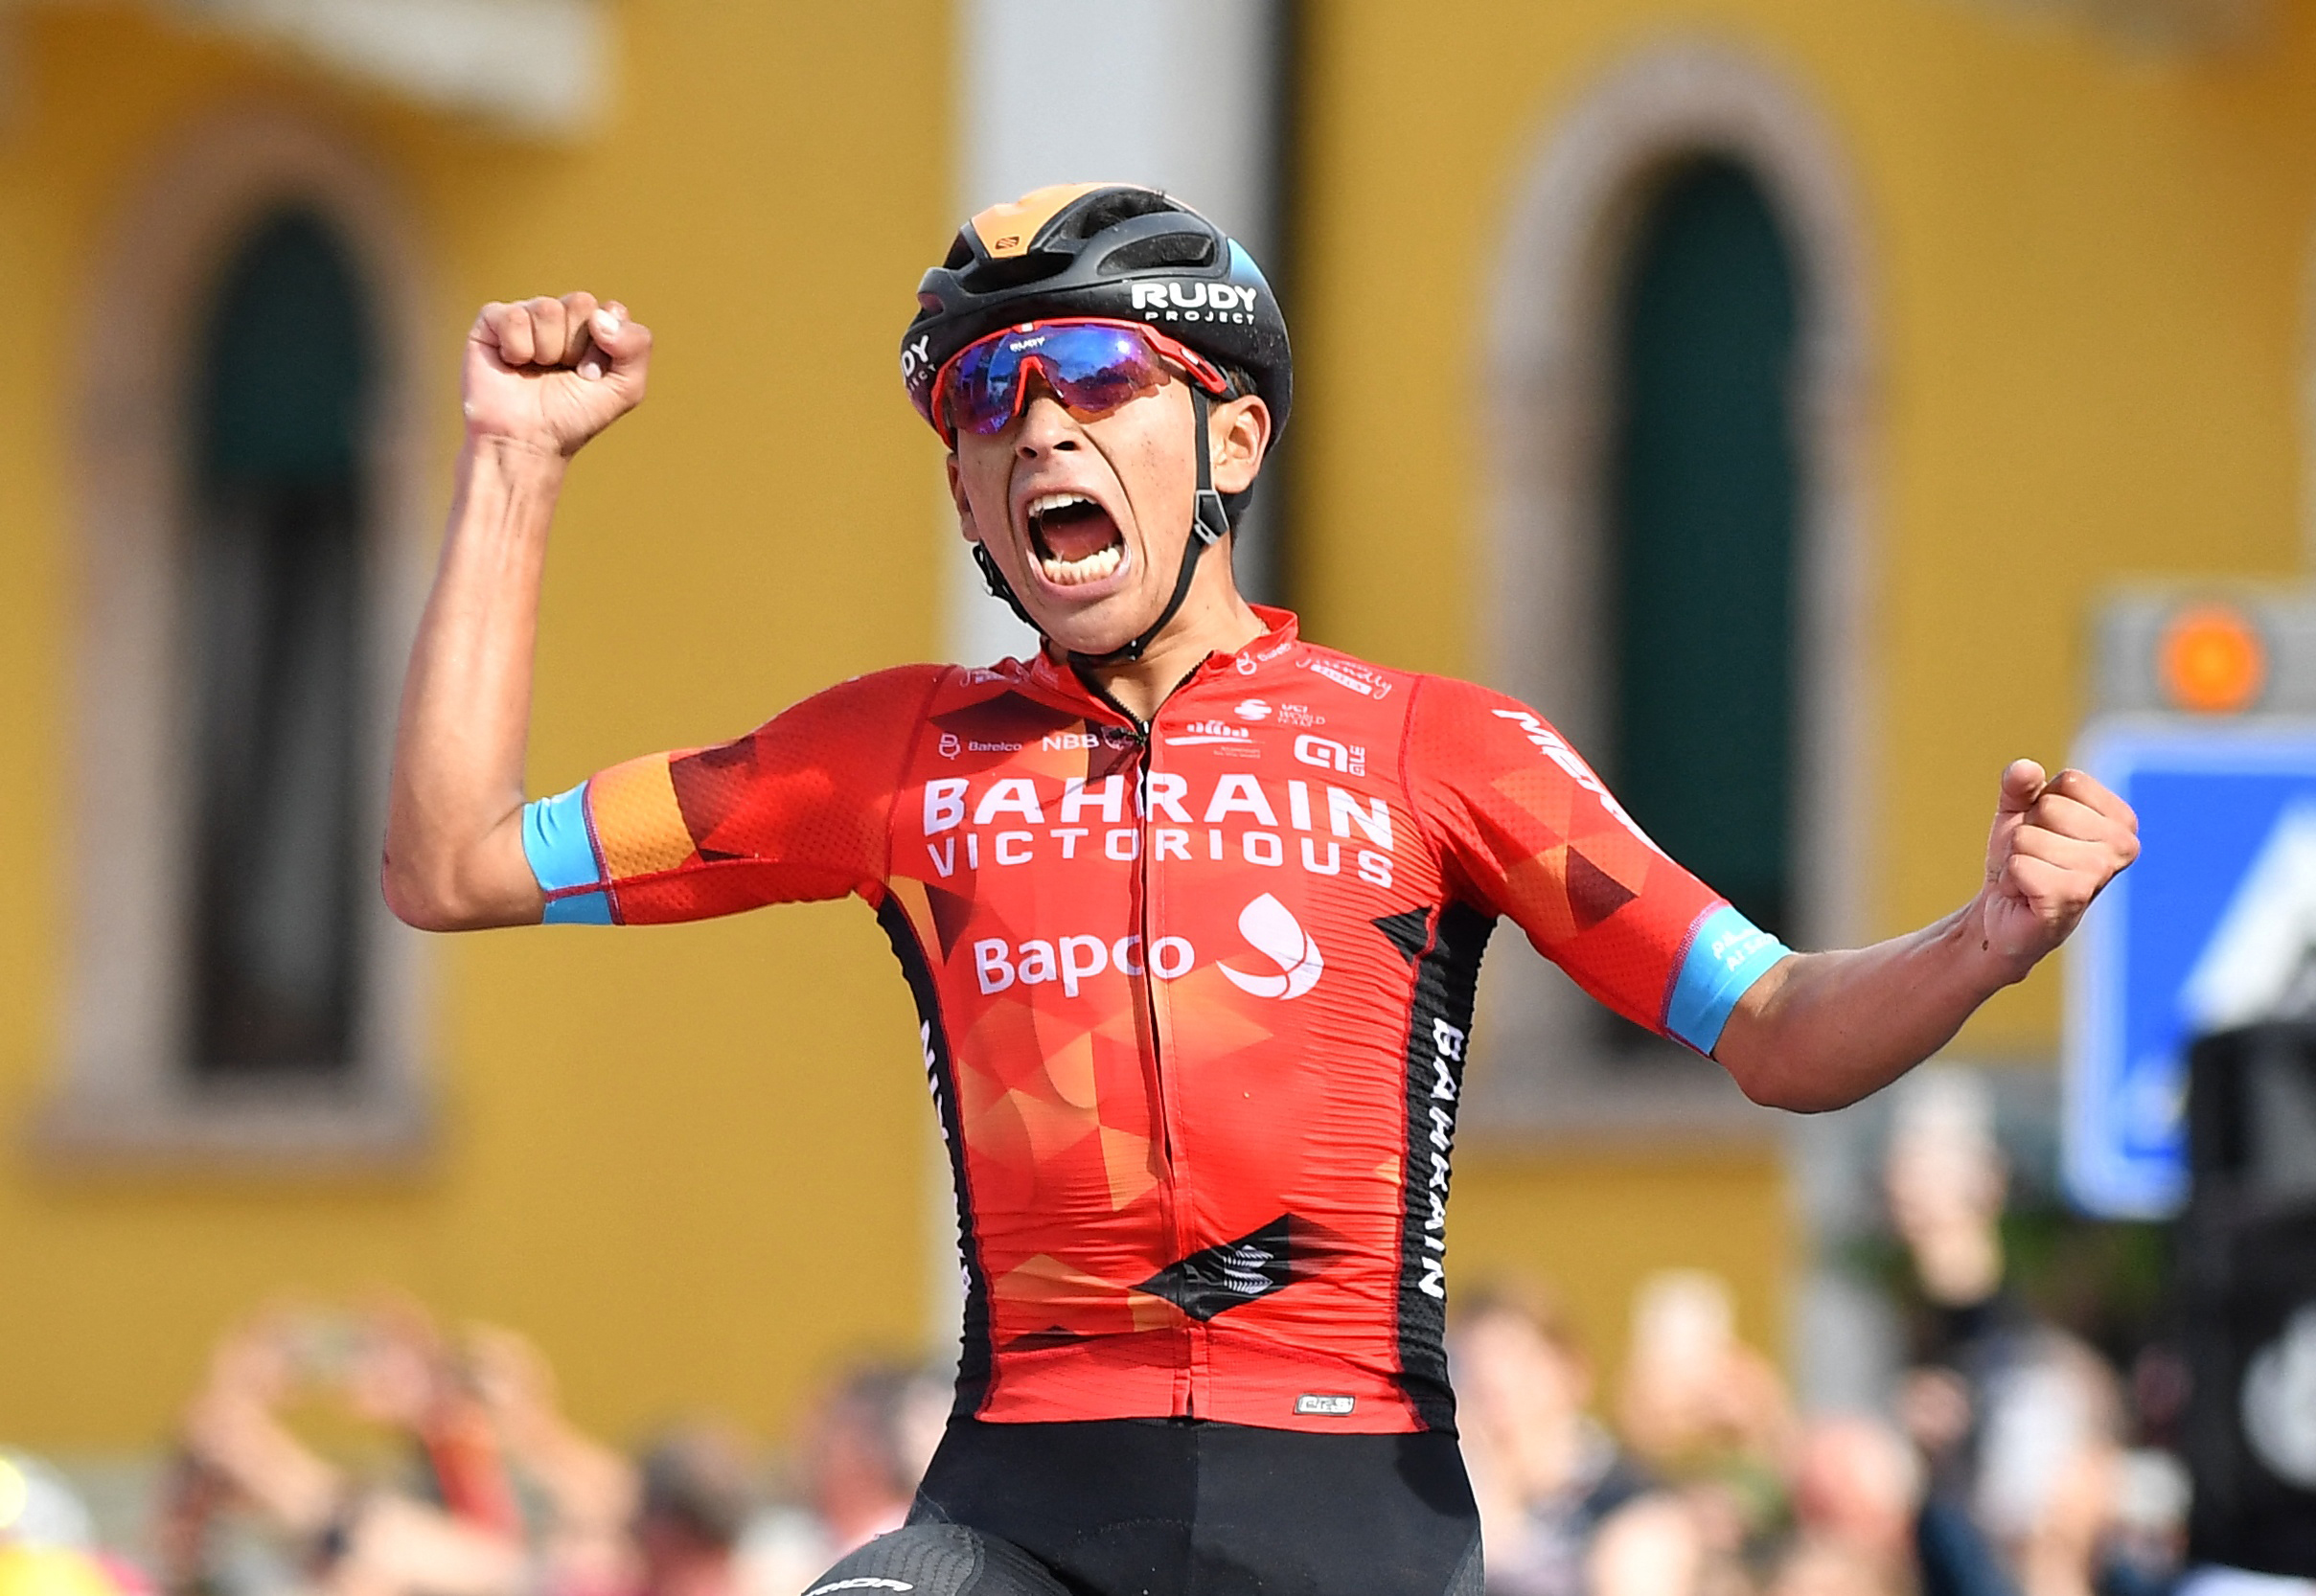 El impresionante ascenso de Santiago Buitrago en el ranking de la UCI tras el Giro de Italia